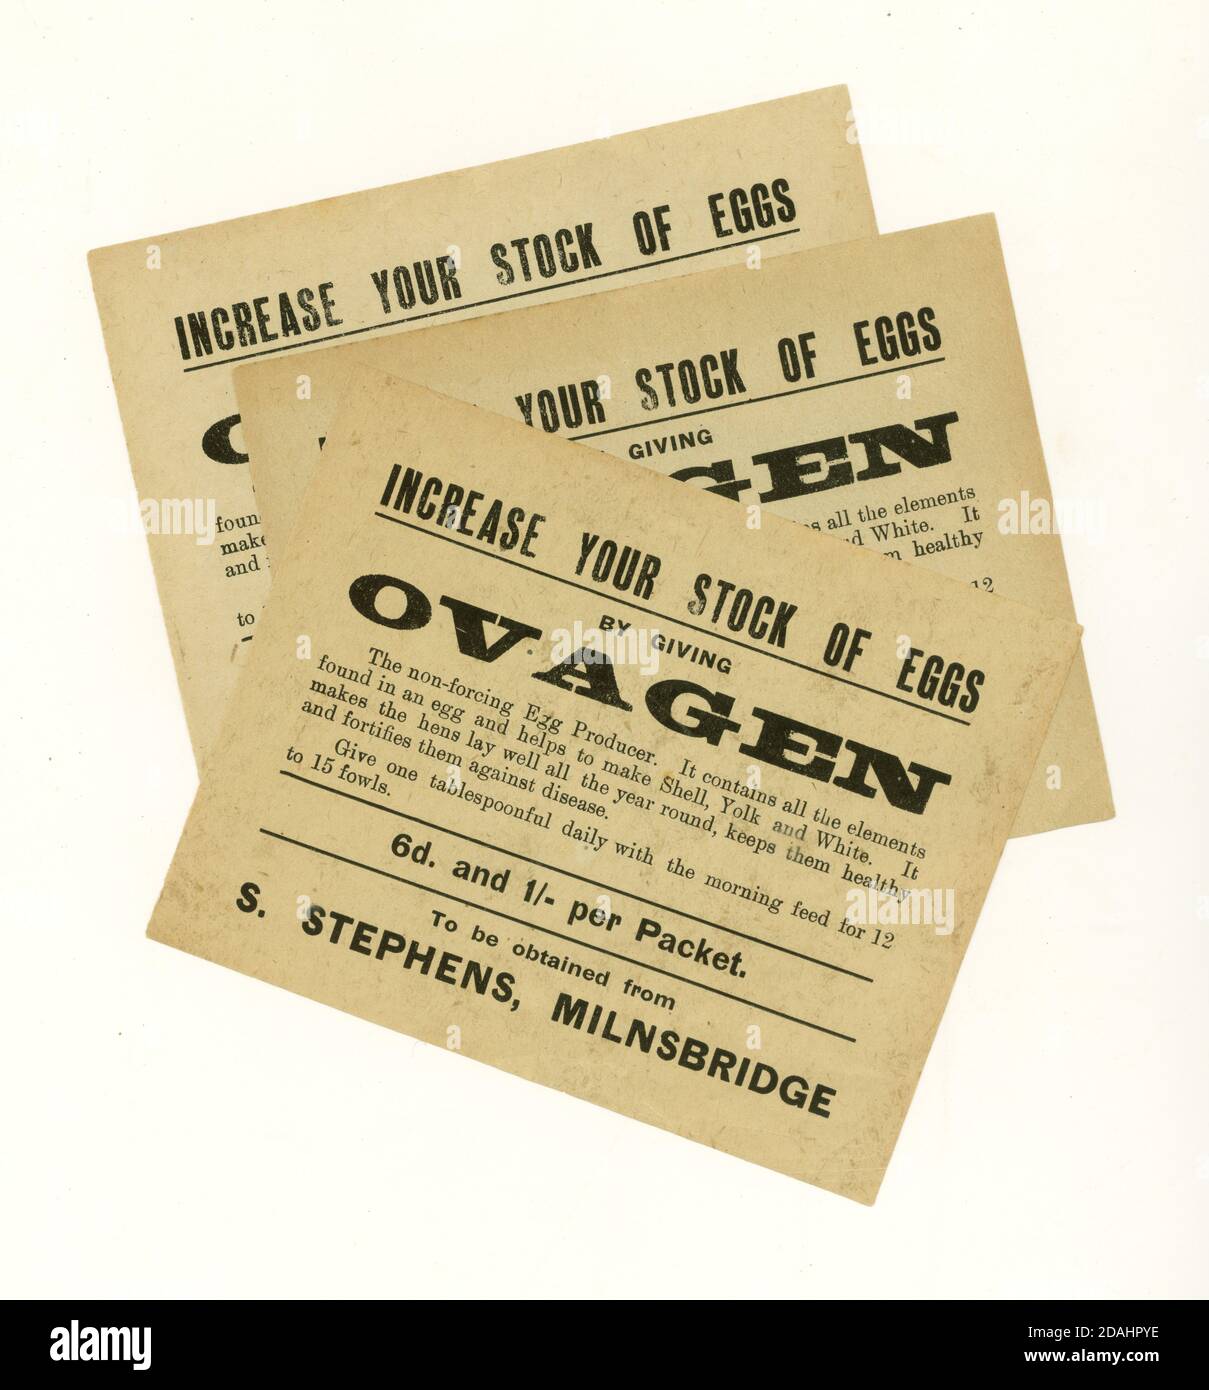 Brochure de production d'oeufs Ovagen début de 1900, Milnsbridge, Huddersfield, W. Yorkshire, Royaume-Uni vers 1920 Banque D'Images